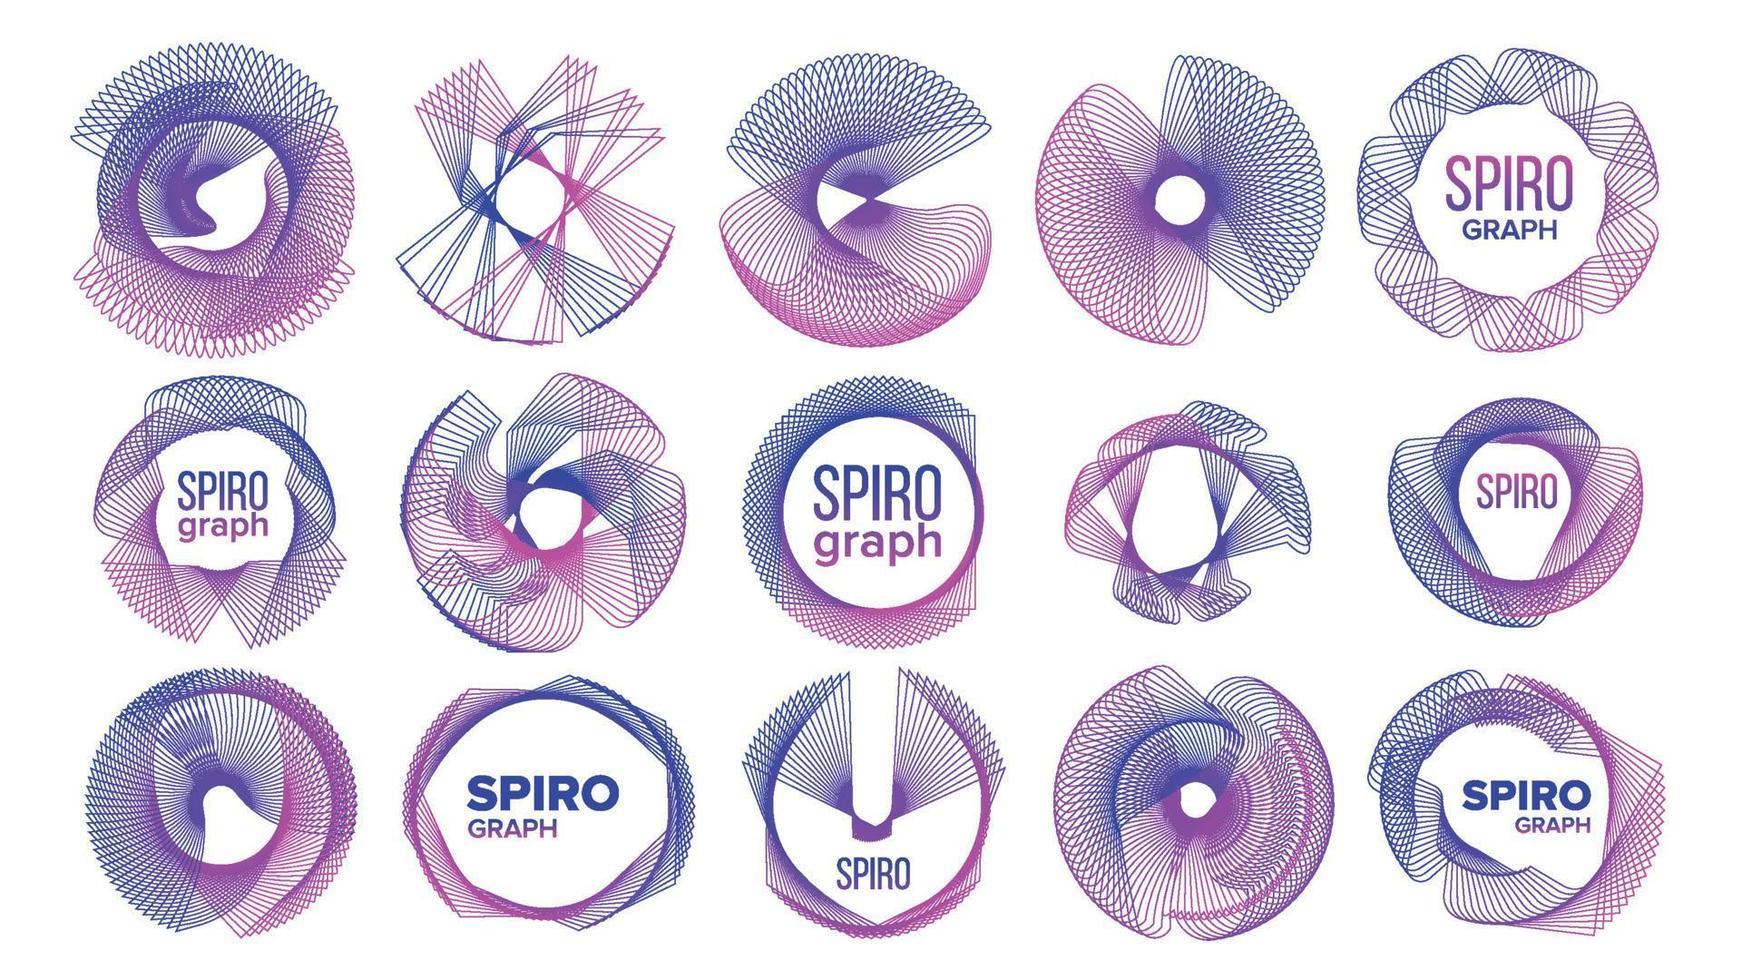 spirograf abstrakt dekorativ symboler uppsättning vektor illustrationer